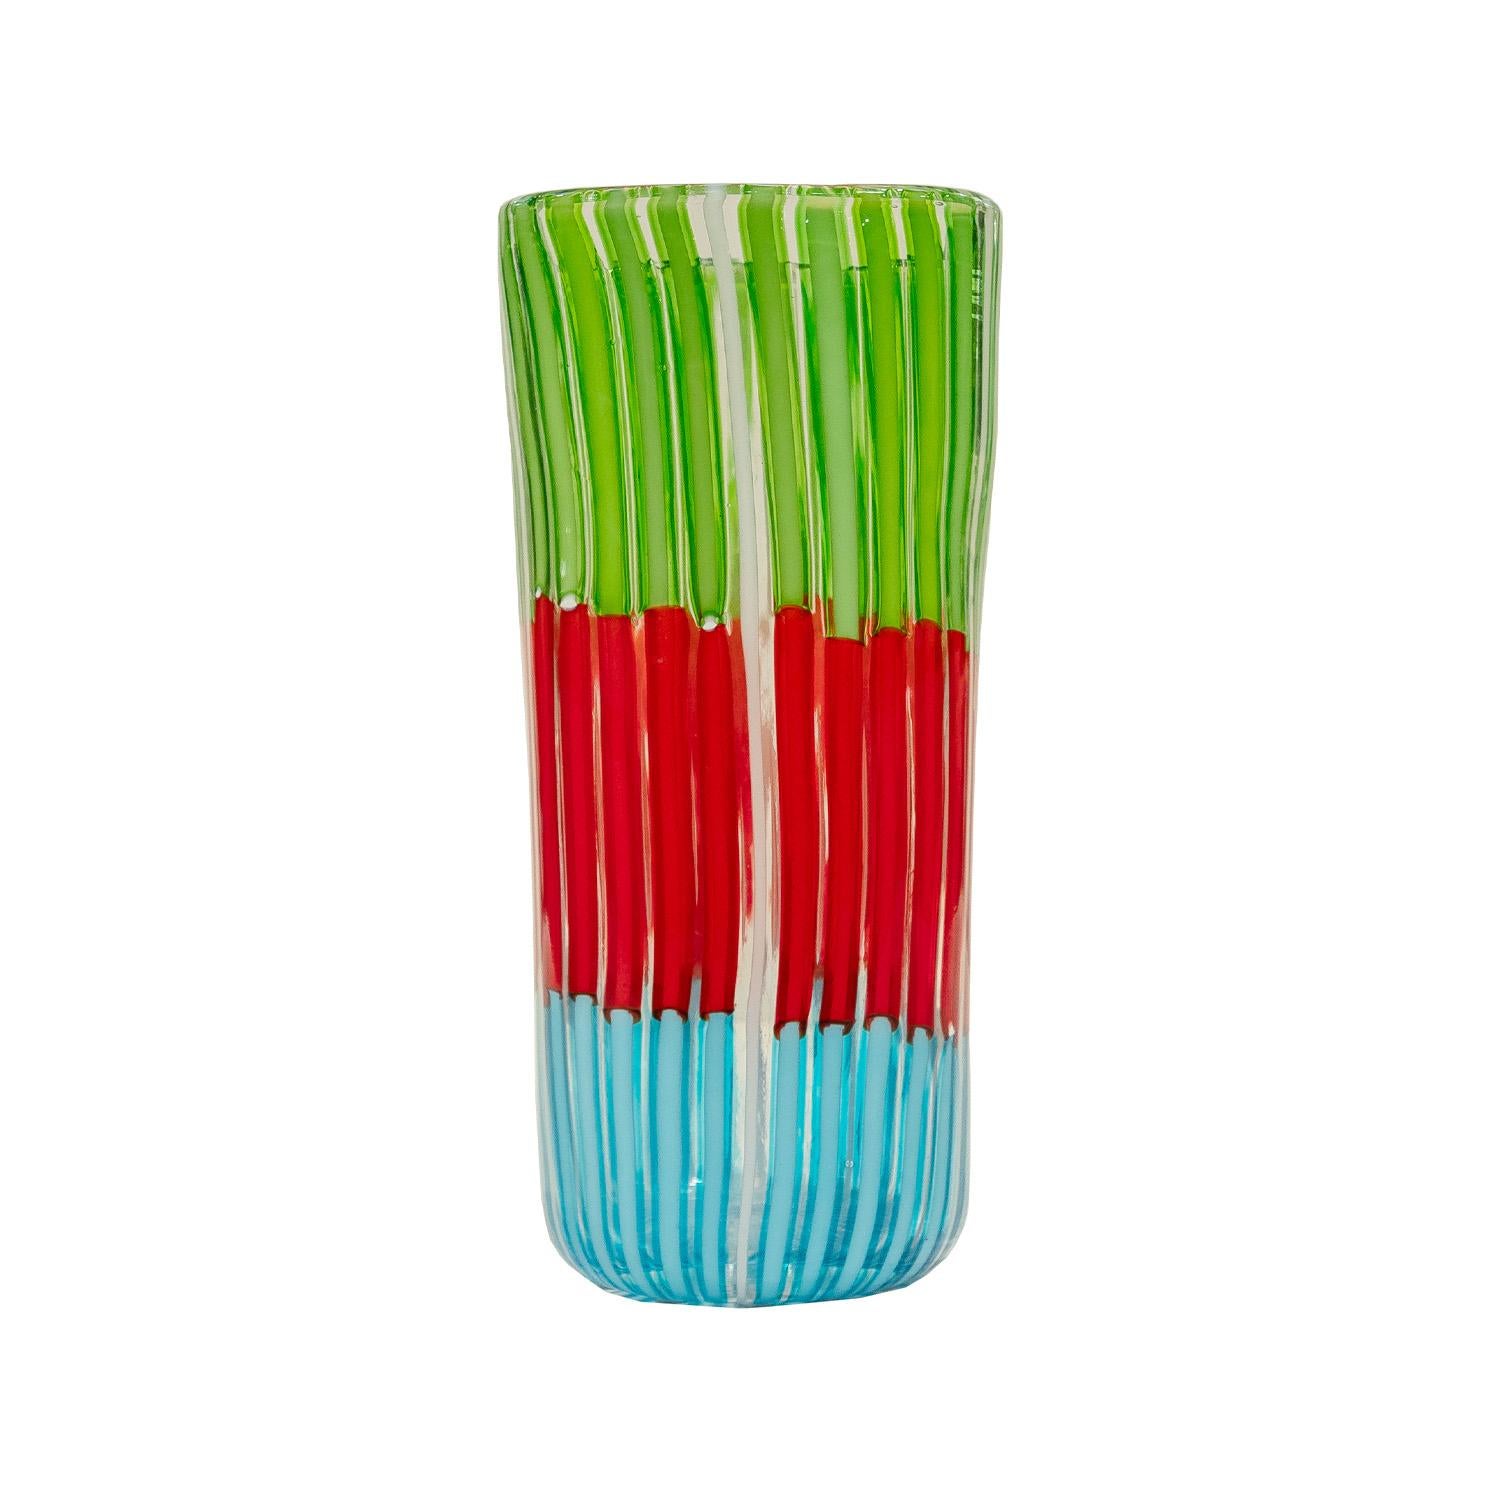 Vase en verre soufflé à la bouche de la série Bandiere avec tiges verticales multicolores par Anzolo Fuga pour AVEM (Arte Vetraria Muranese), Murano Italie, 1955-6.  Les tiges claires et blanches intercalées entre les tiges colorées créent un design